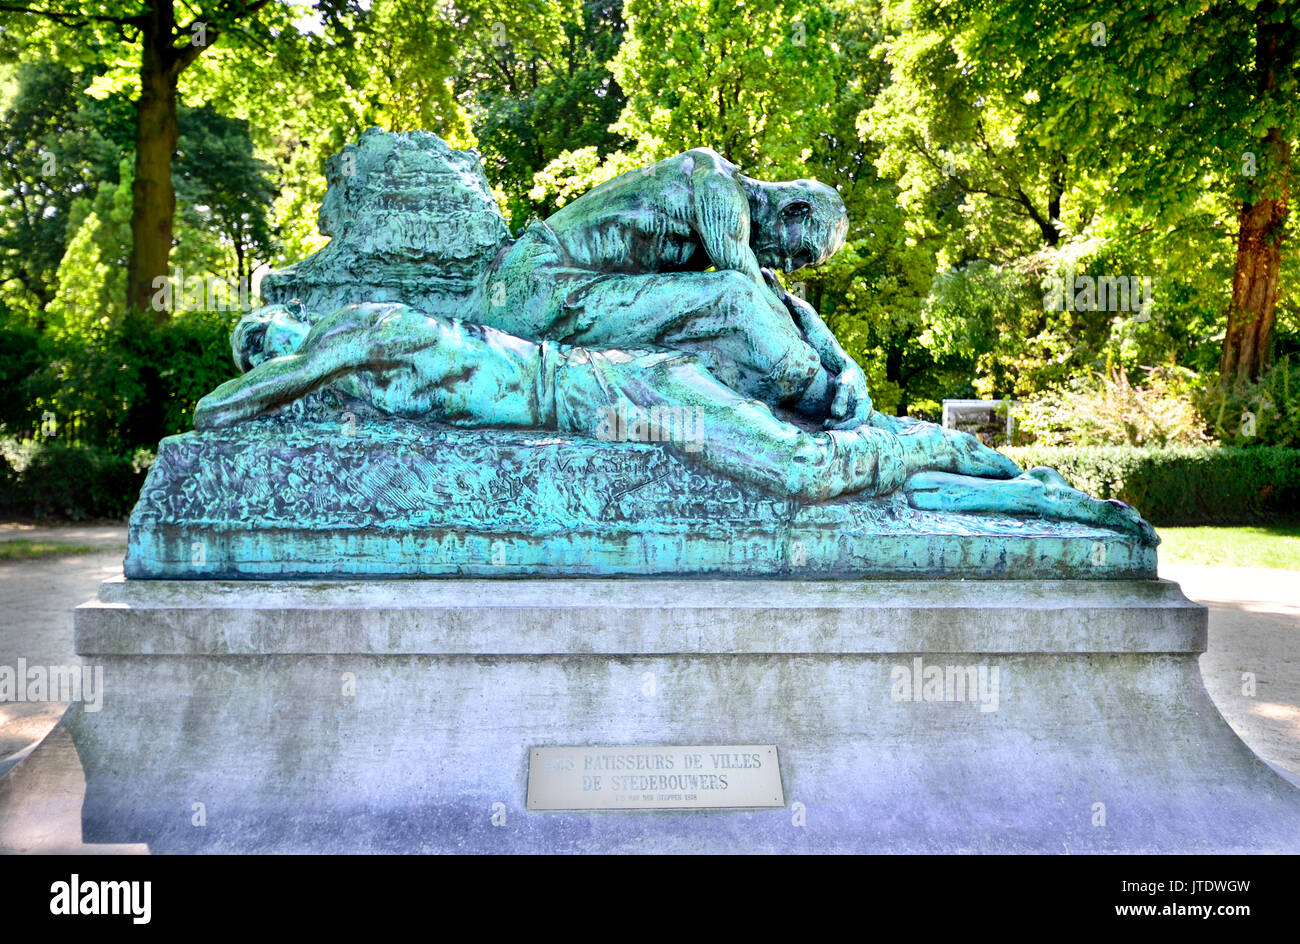 Brüssel, Belgien. Parc du Cinquantenaire/Jubelpark. Denkmal: Les Batisseurs de Villes/De Stedebouwers (Charles van der Stappen, 1898,.... Stockfoto